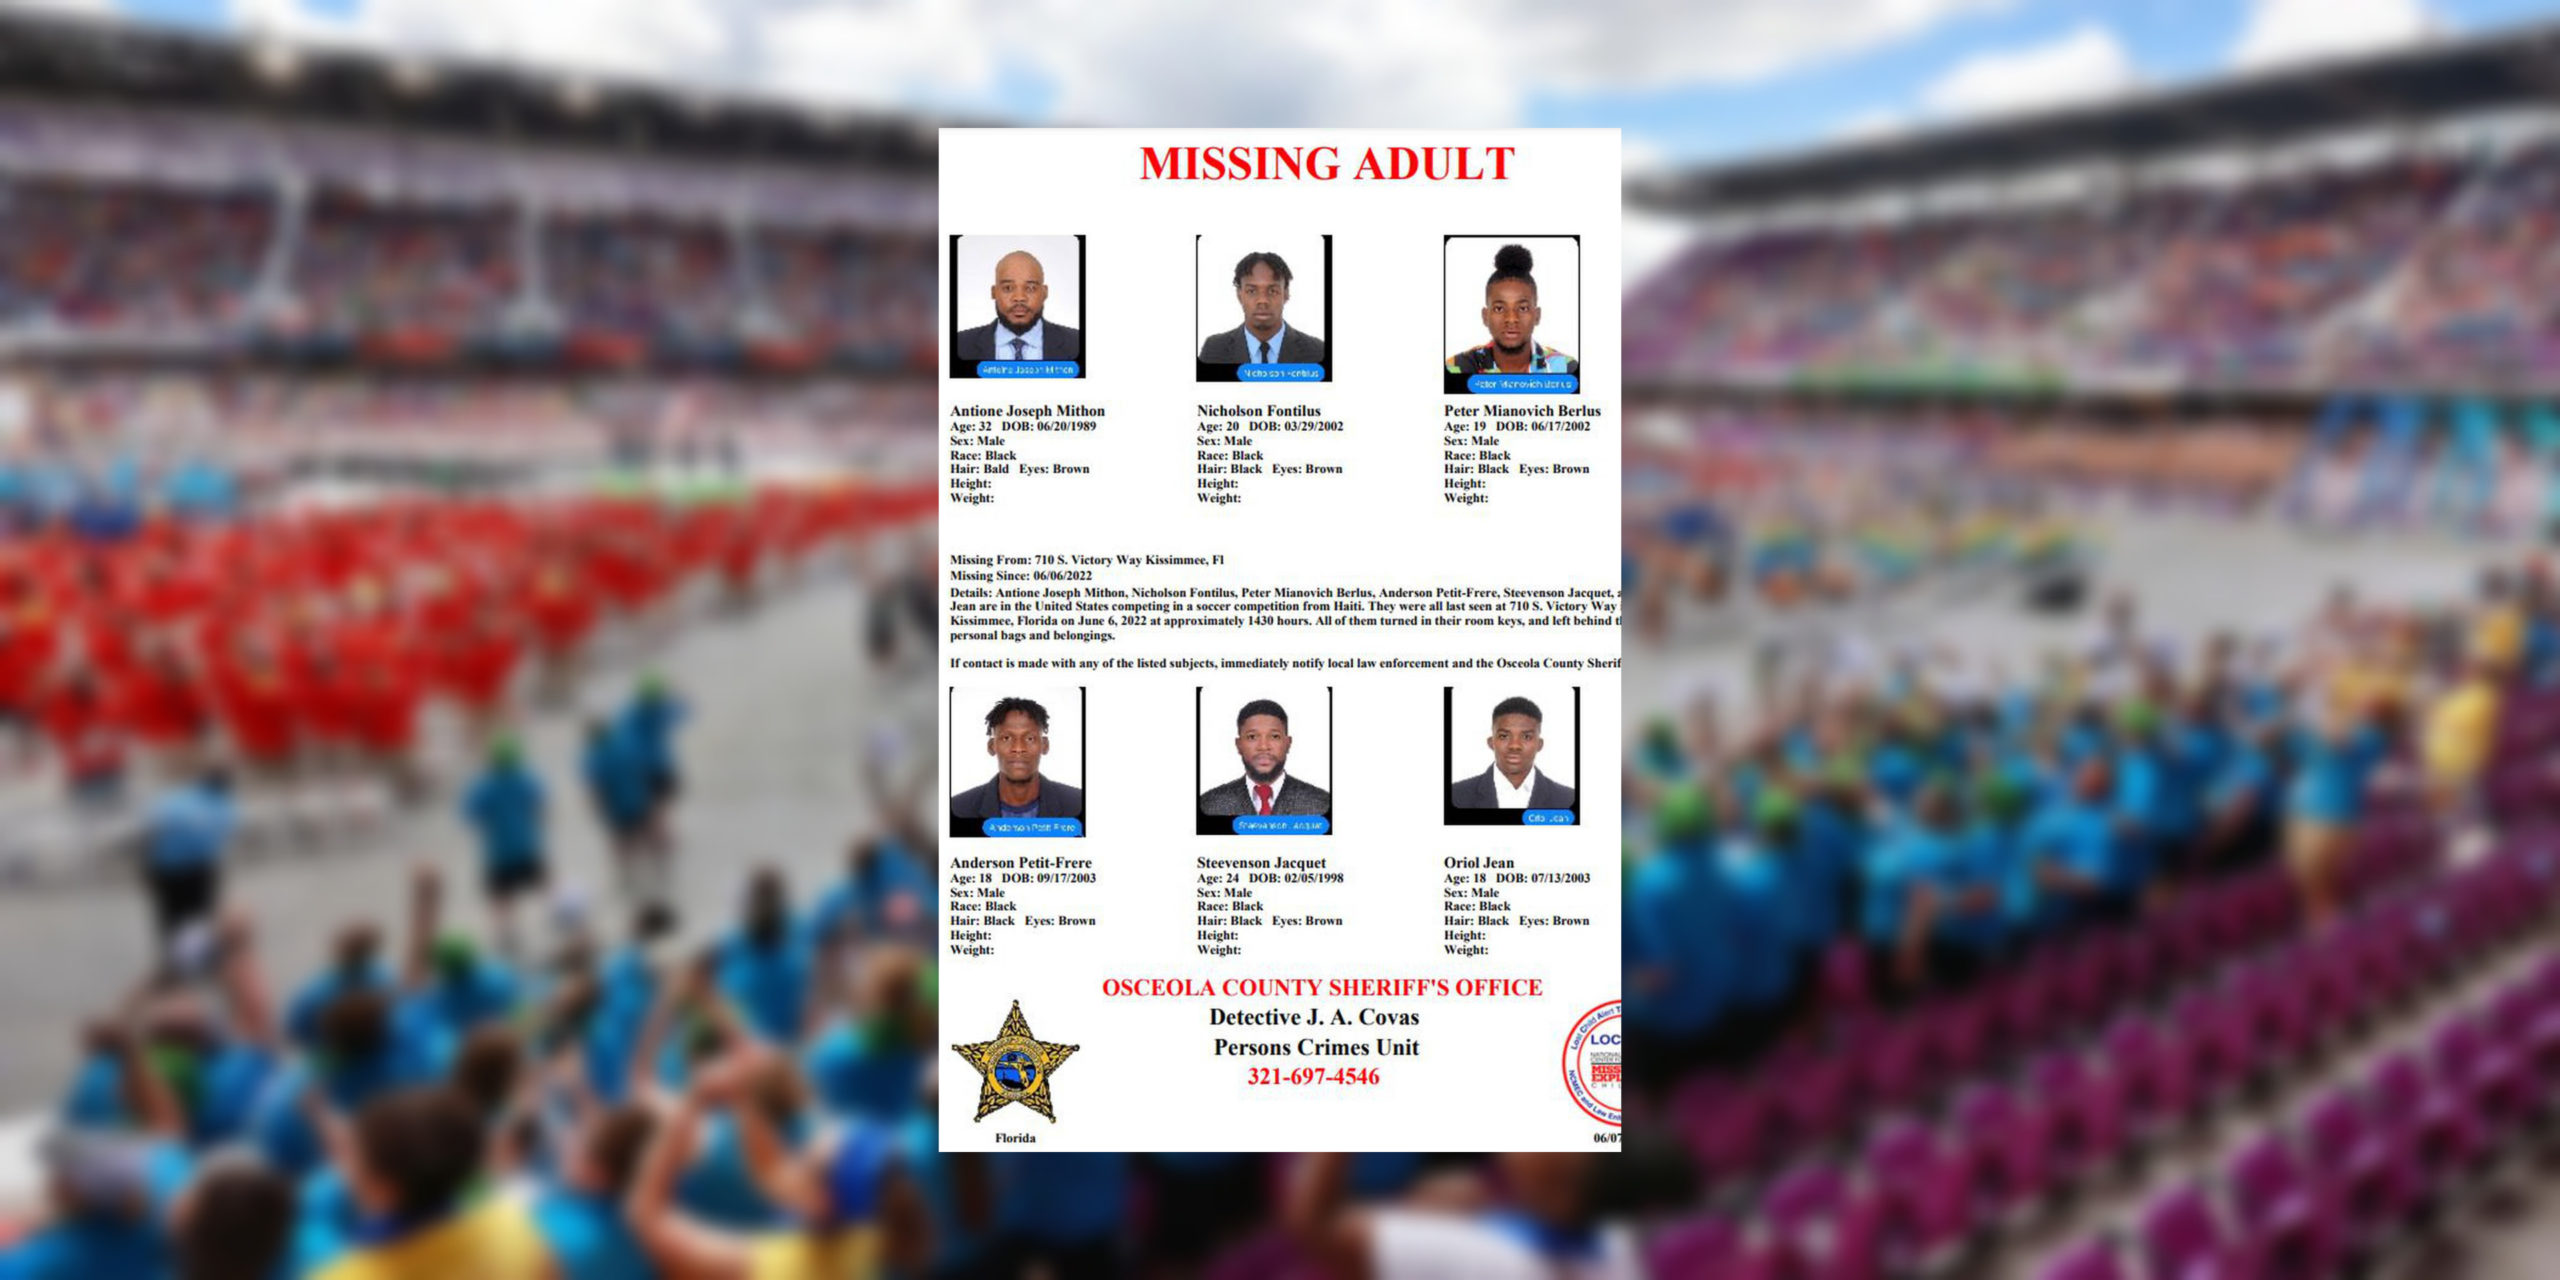 Six membres de la délégation haïtienne des Jeux Olympiques spéciaux sont portés disparus